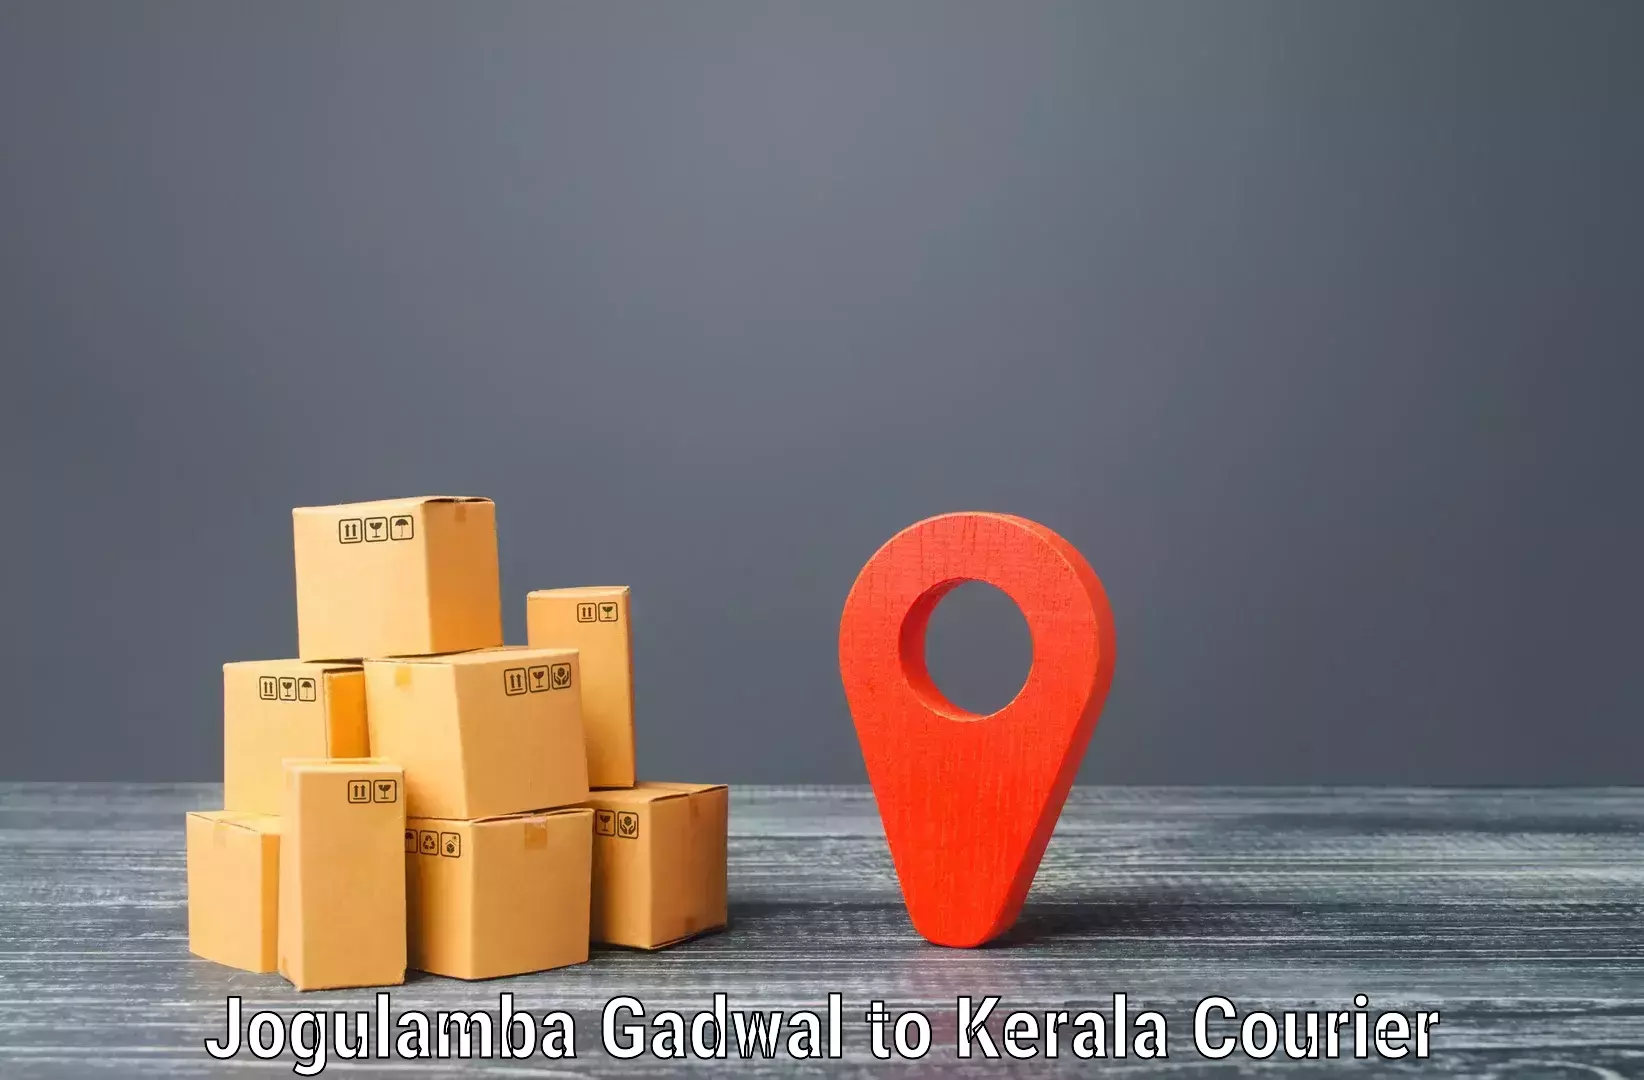 Urgent courier needs Jogulamba Gadwal to Mundakayam